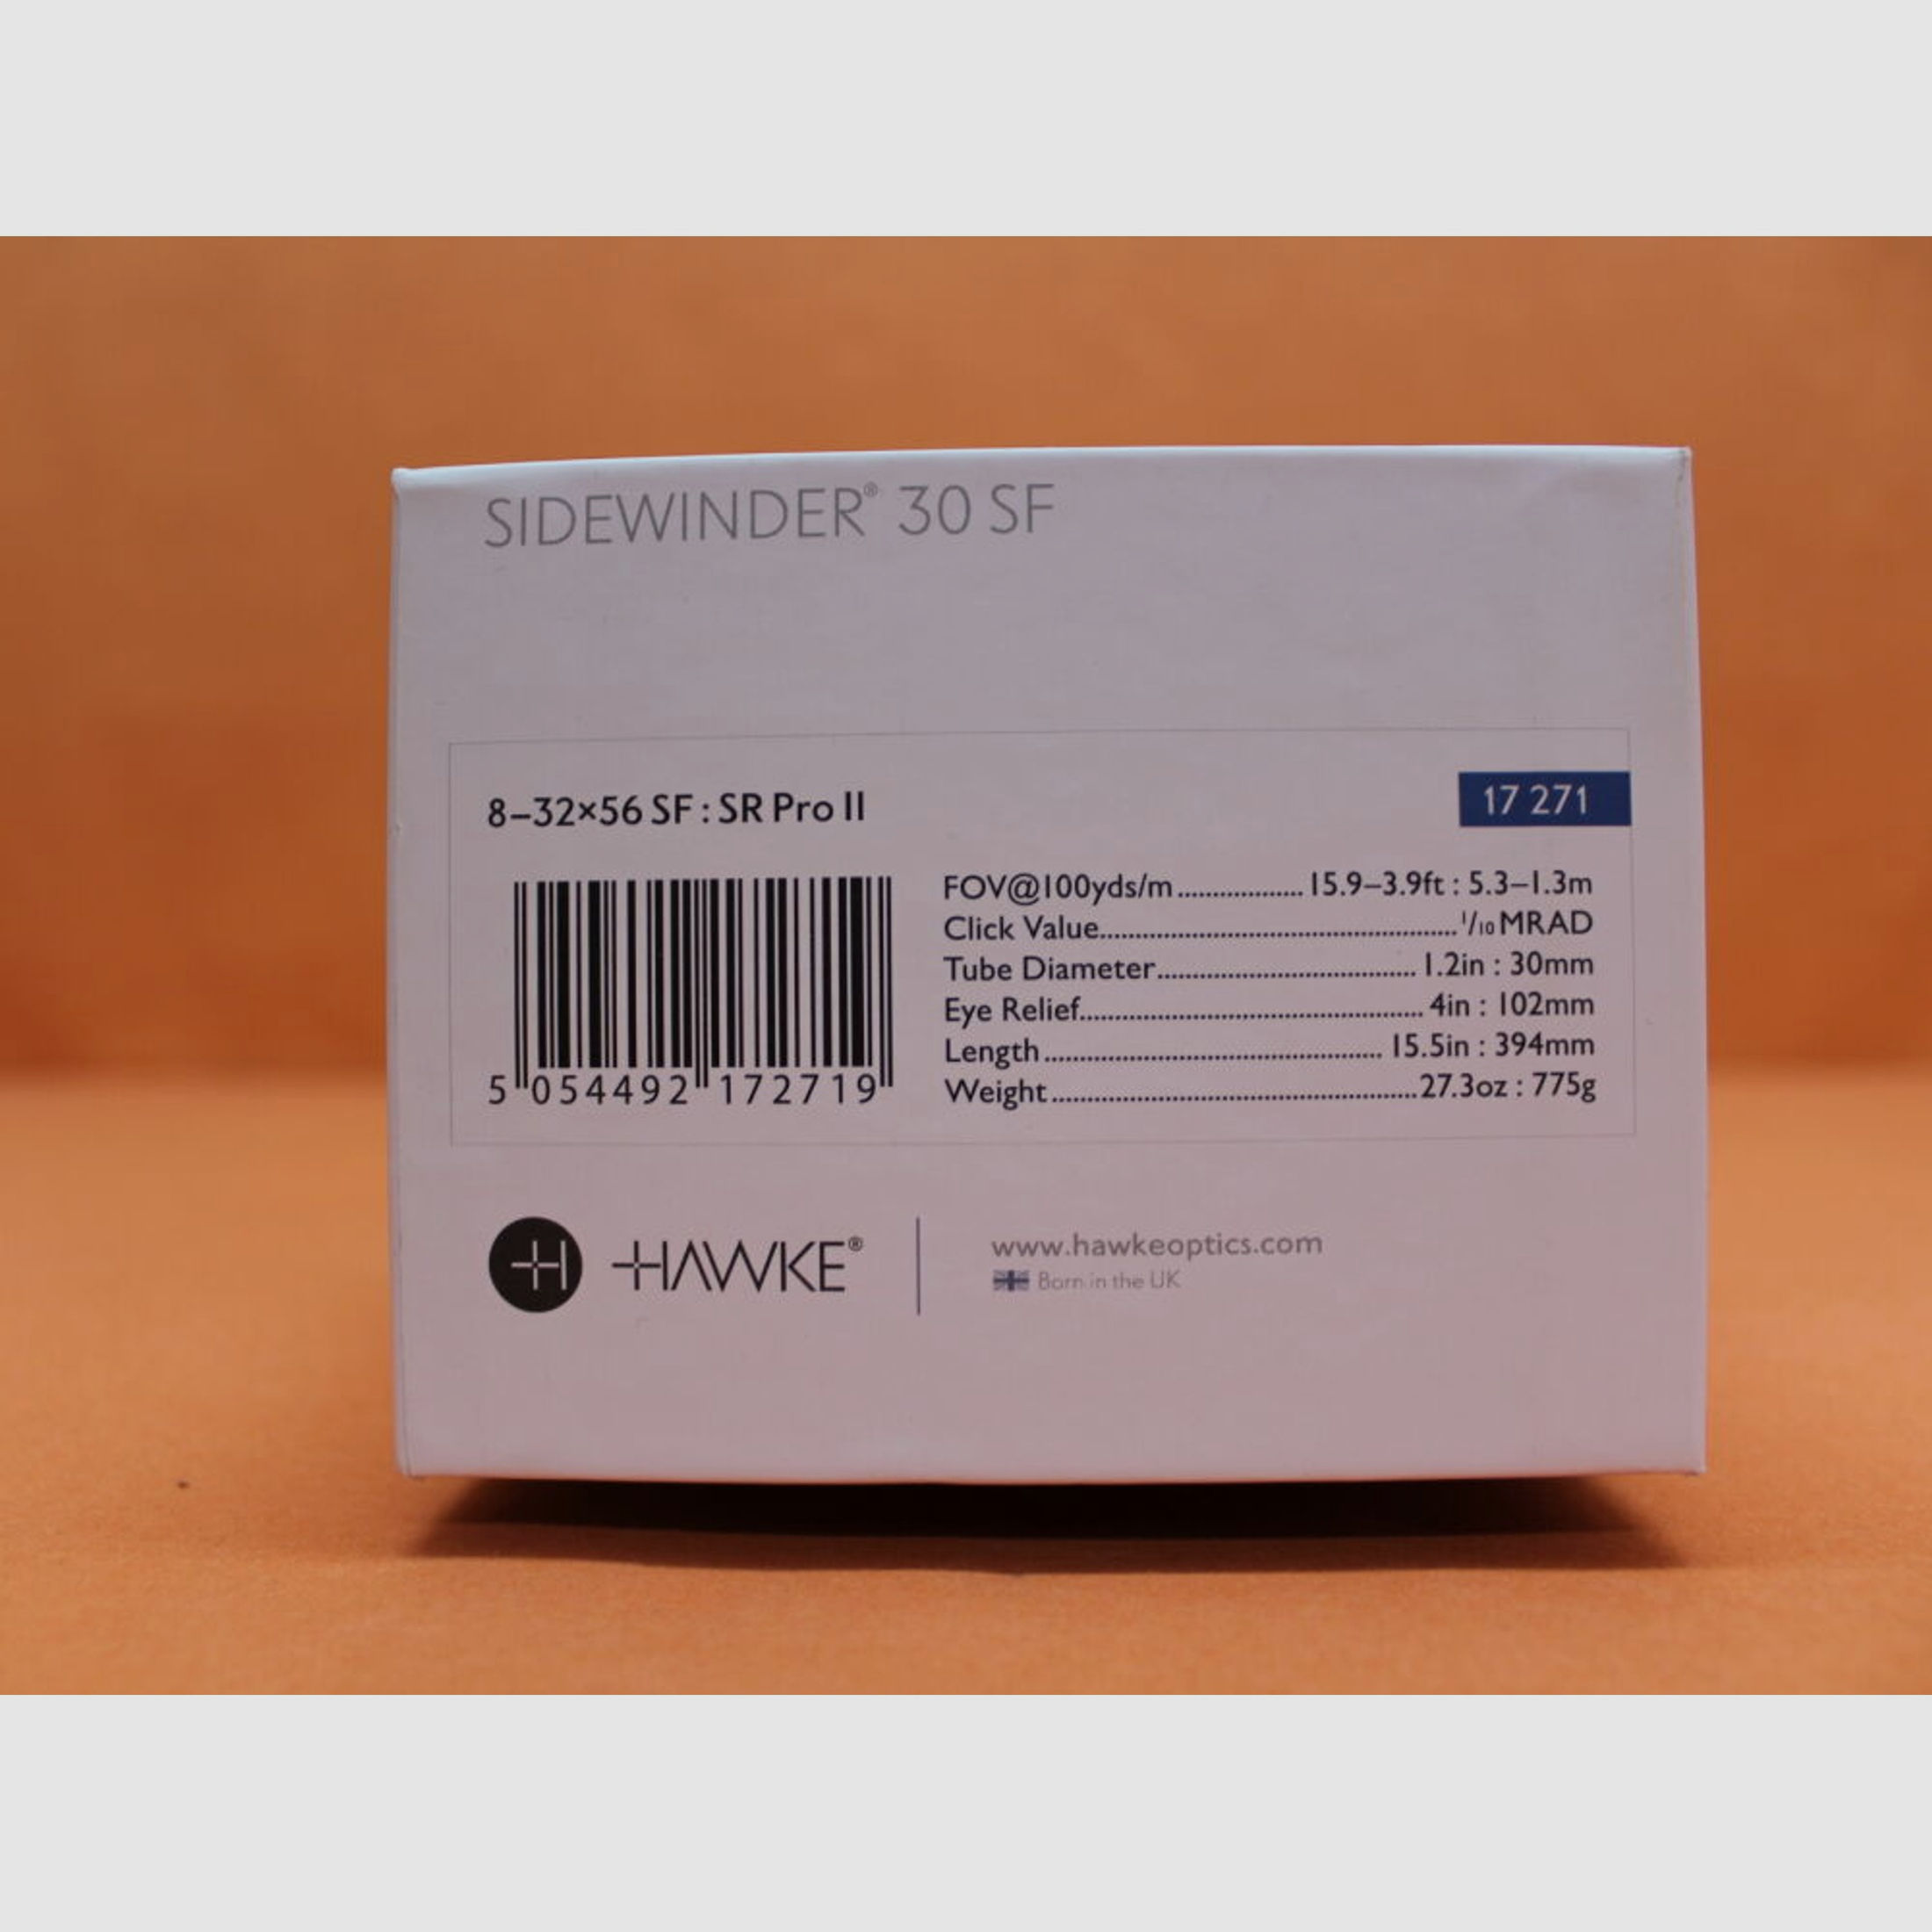 HAWKE	 HAWKE Sidewinder 30 SF Zielfernrohr 8-32x56 (17271) SR Pro II Leuchtabsehen (2.BE) 10mm Click